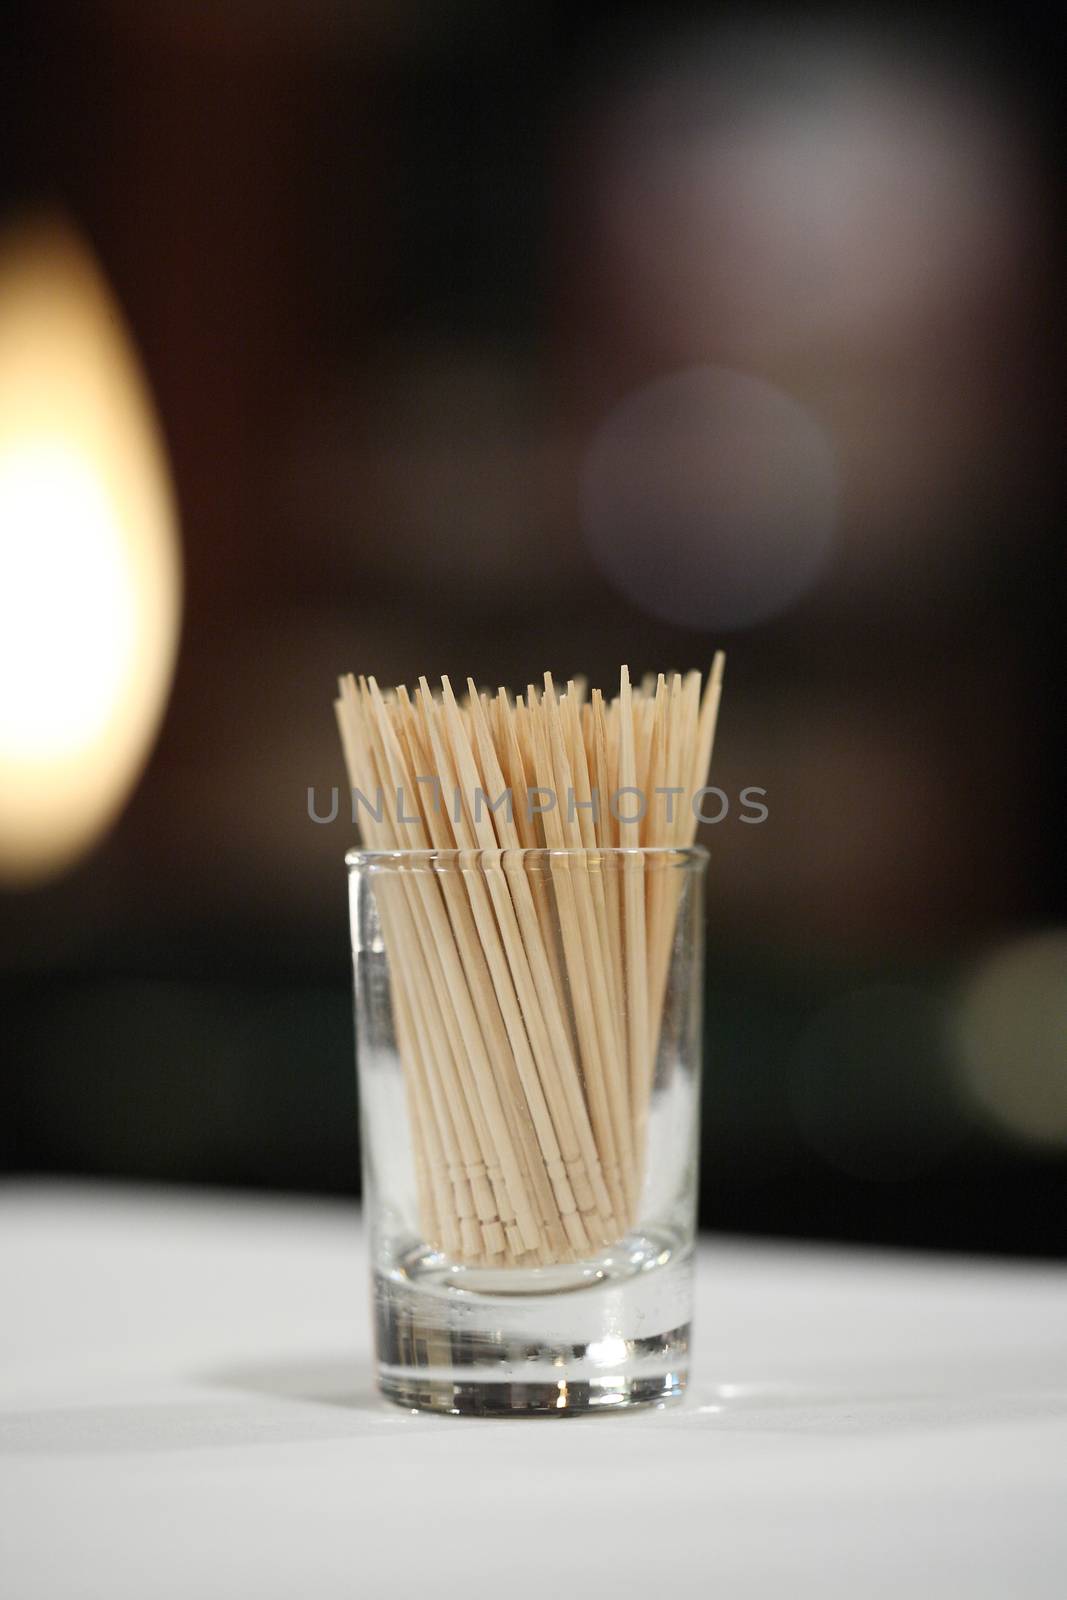 Toothpick by piyato